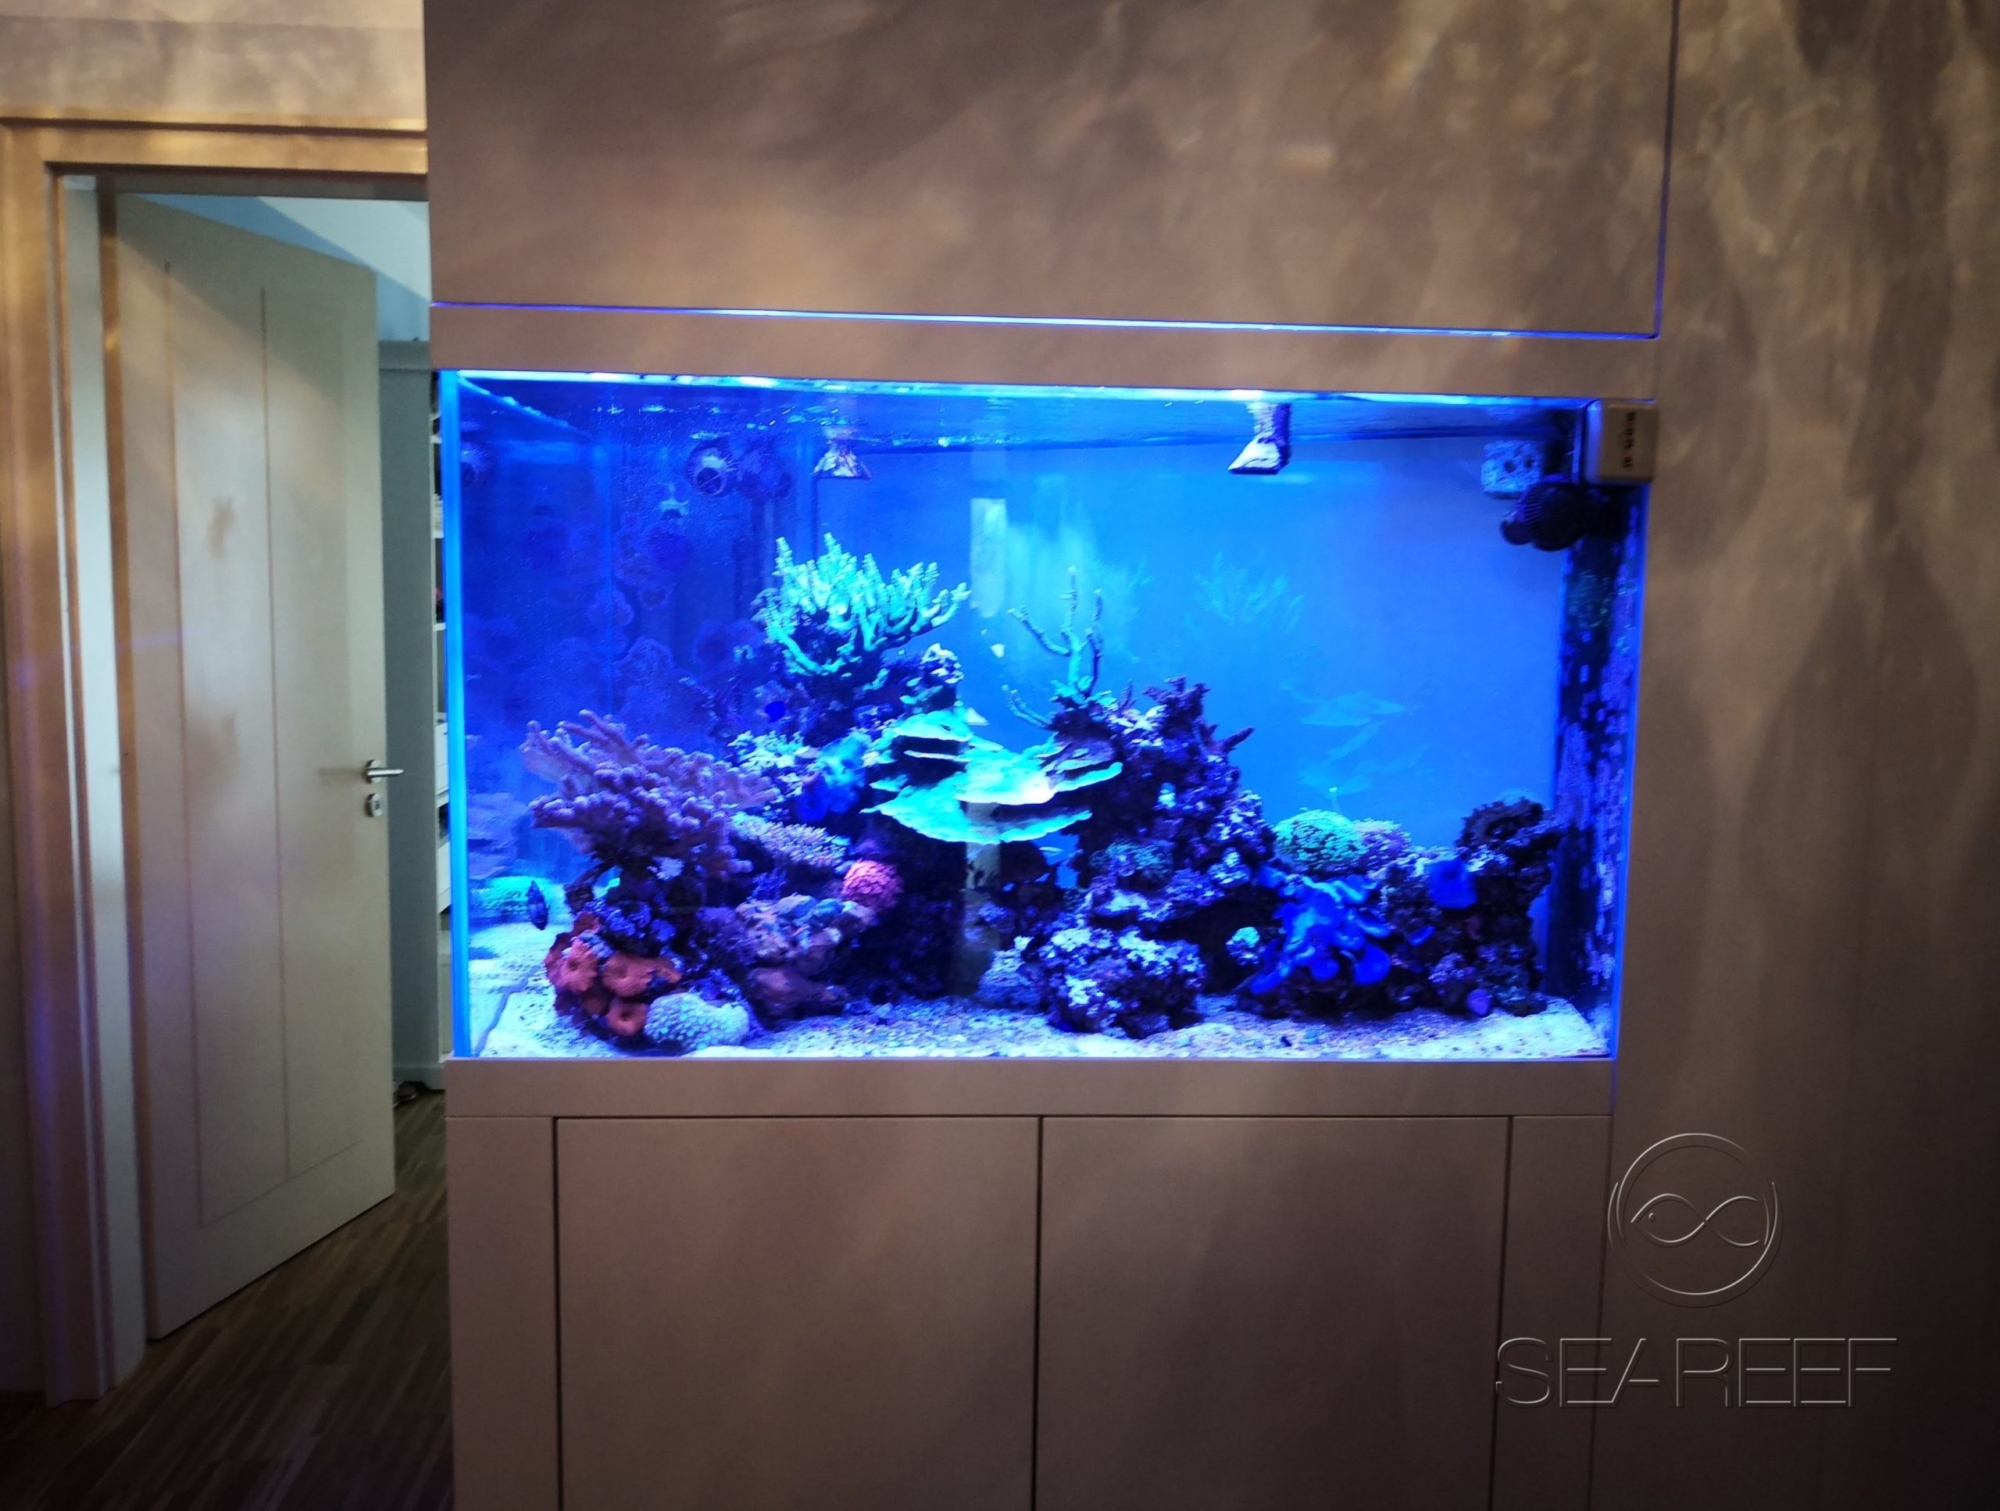 Mořské akvárium na míru doplňující design interiéru bytu obsahující korály a útesové ryby.